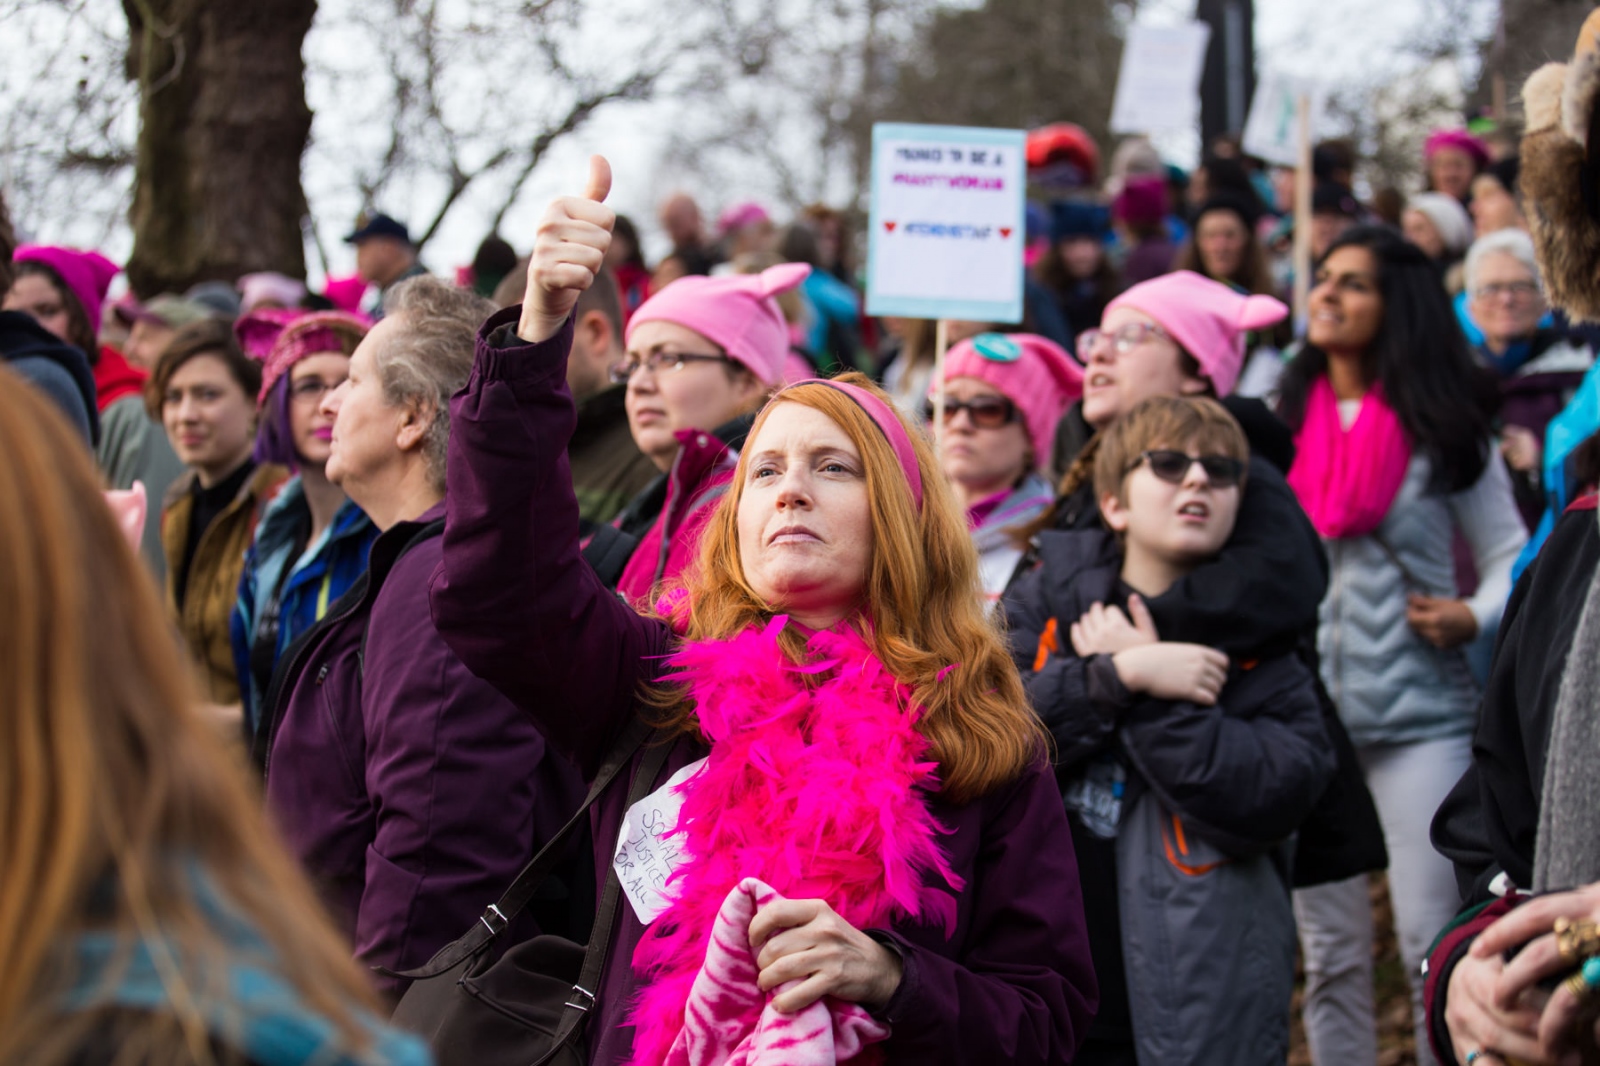 March - Seattle Women's March 2017